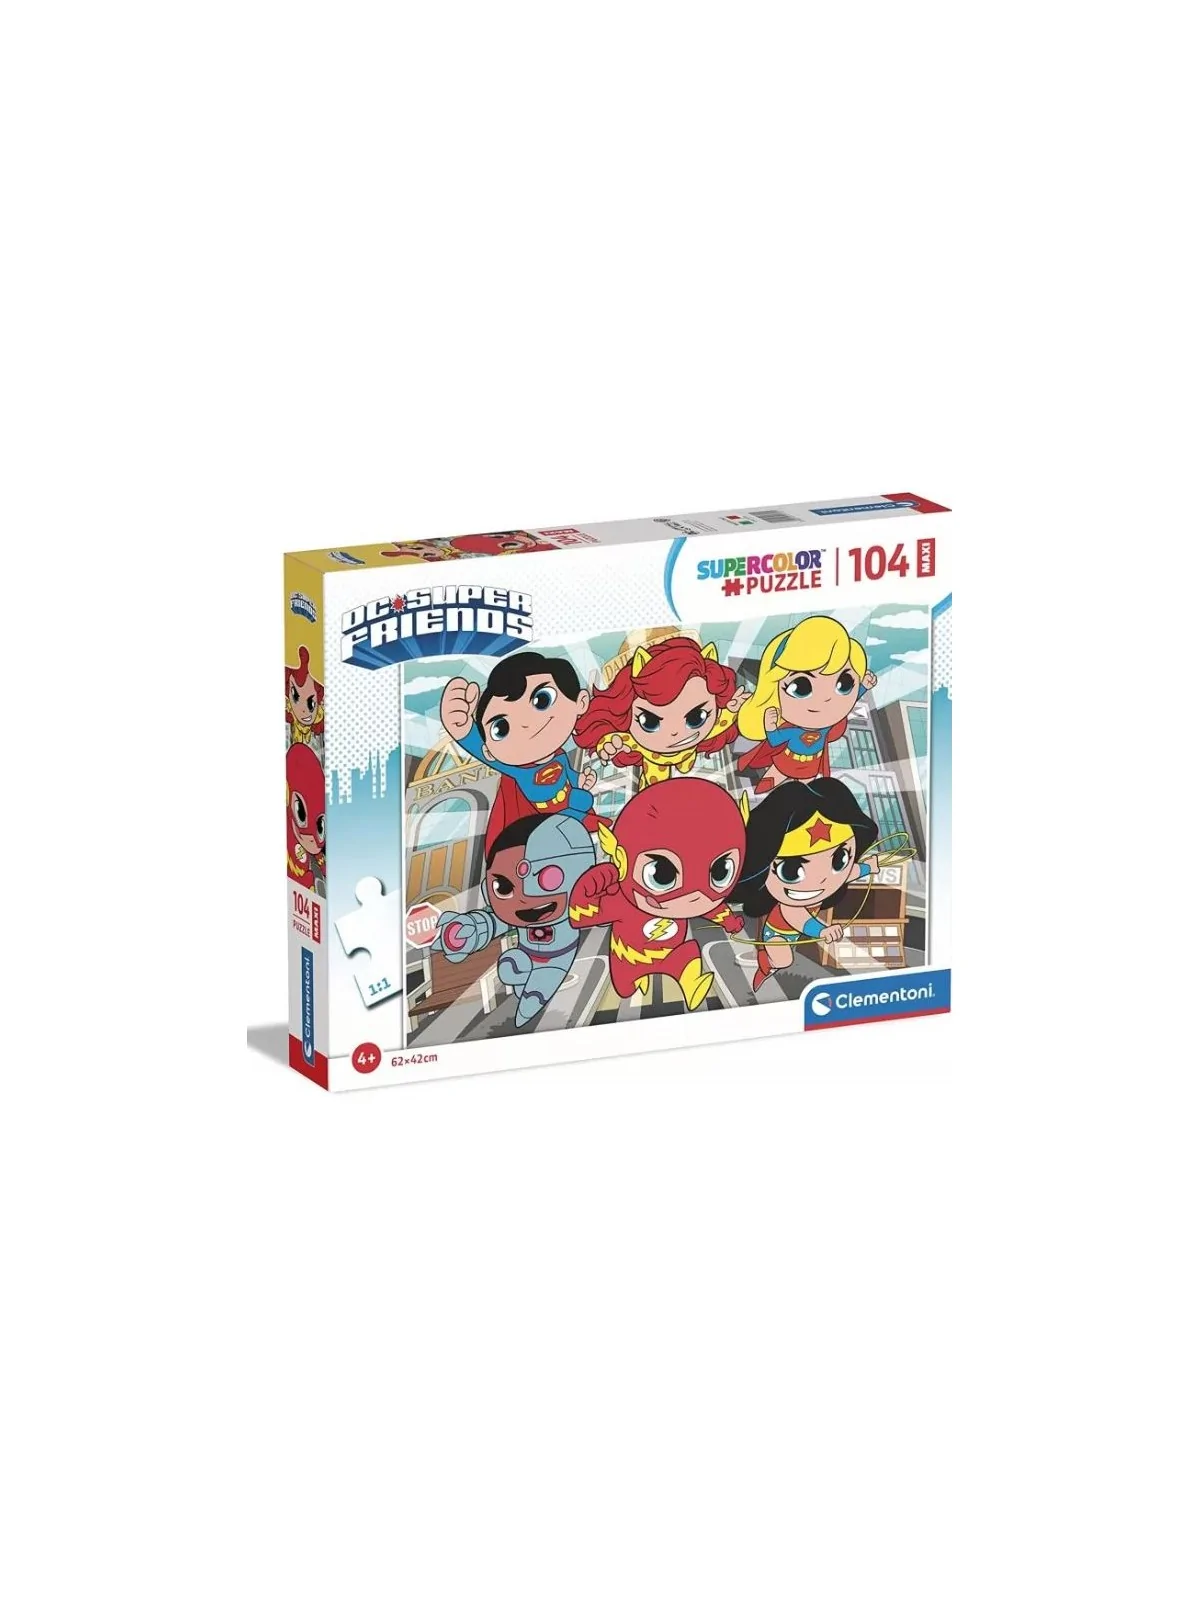 Maxi Puzzle Super Color DC Super Friends 104 pcs